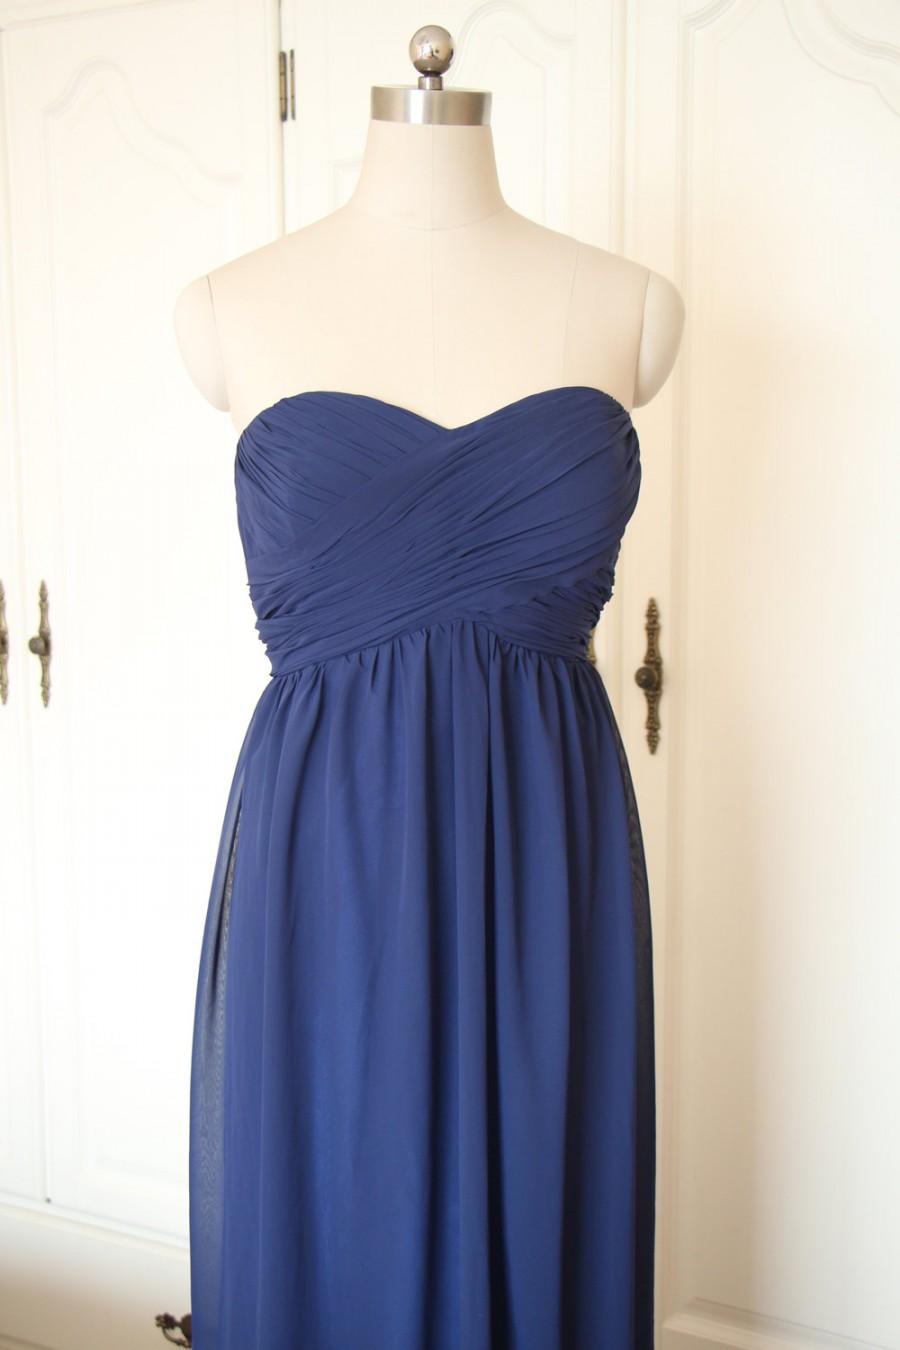 زفاف - Navy Blue Sweetheart Short/Floor-length Bridesmaid Dress Navy Chiffon Strapless Dress-Custom Dress